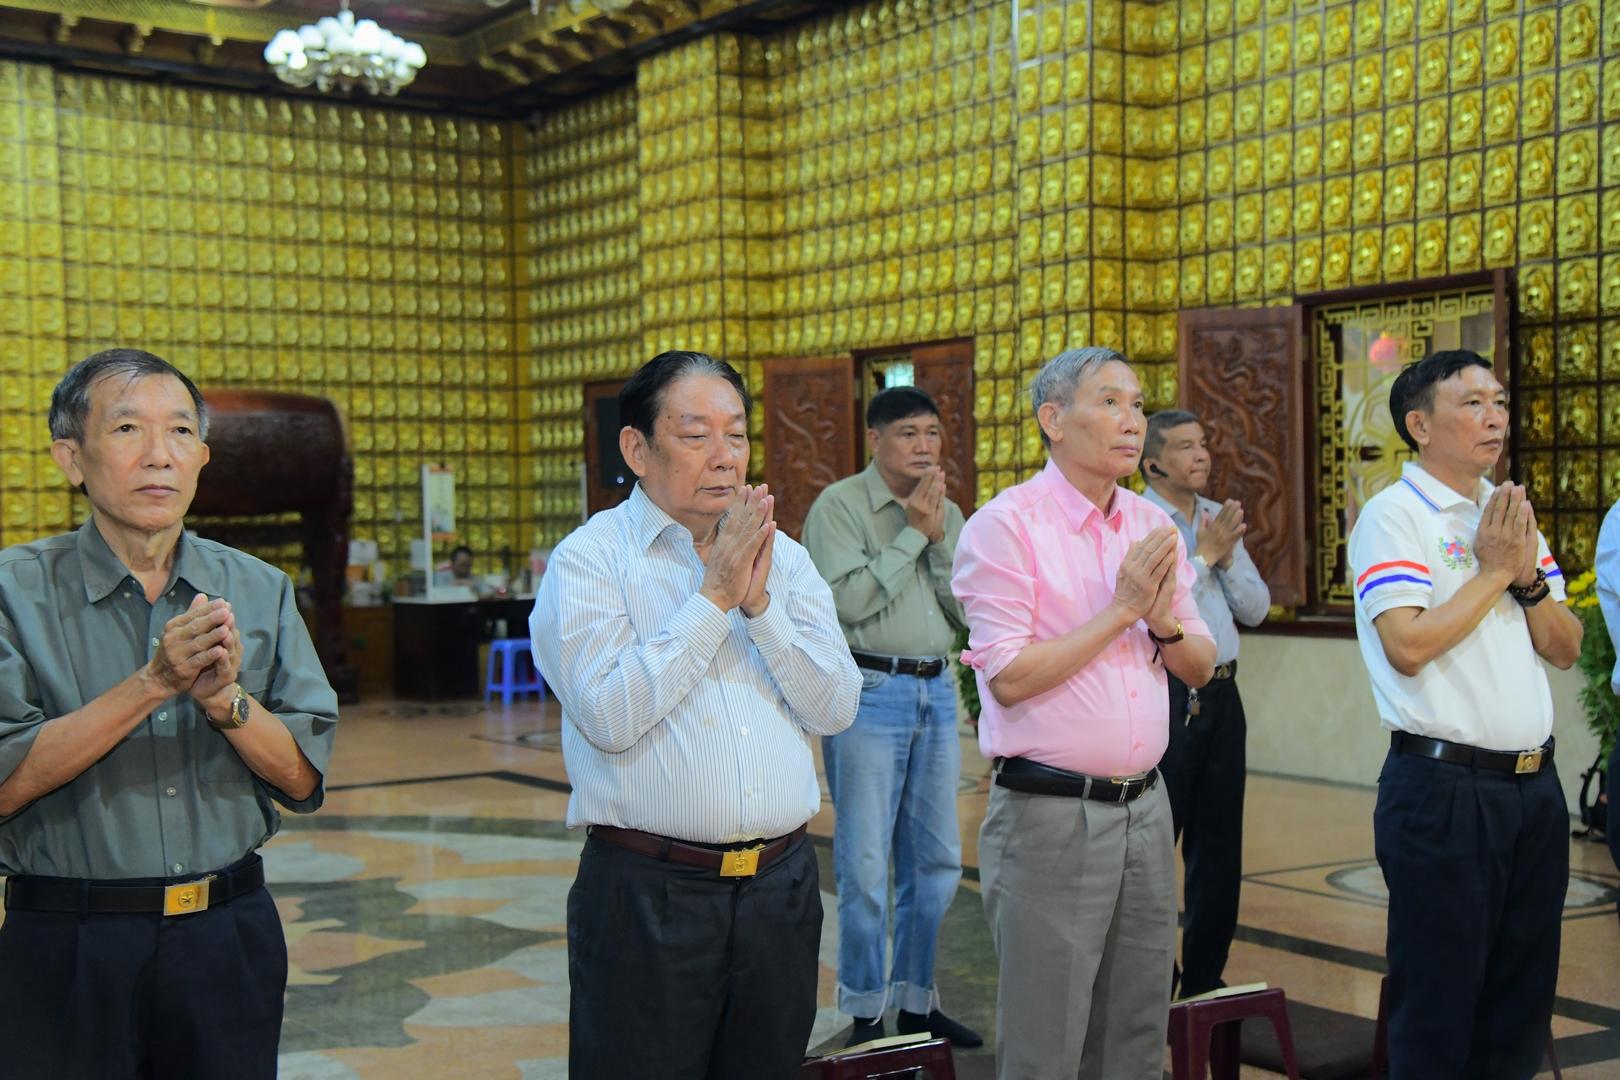 Hội Điều hành họ Trần TP.HCM đã đến thăm, chúc Tết Tăng đoàn chùa Giác Ngộ quận 10, TP.HCM